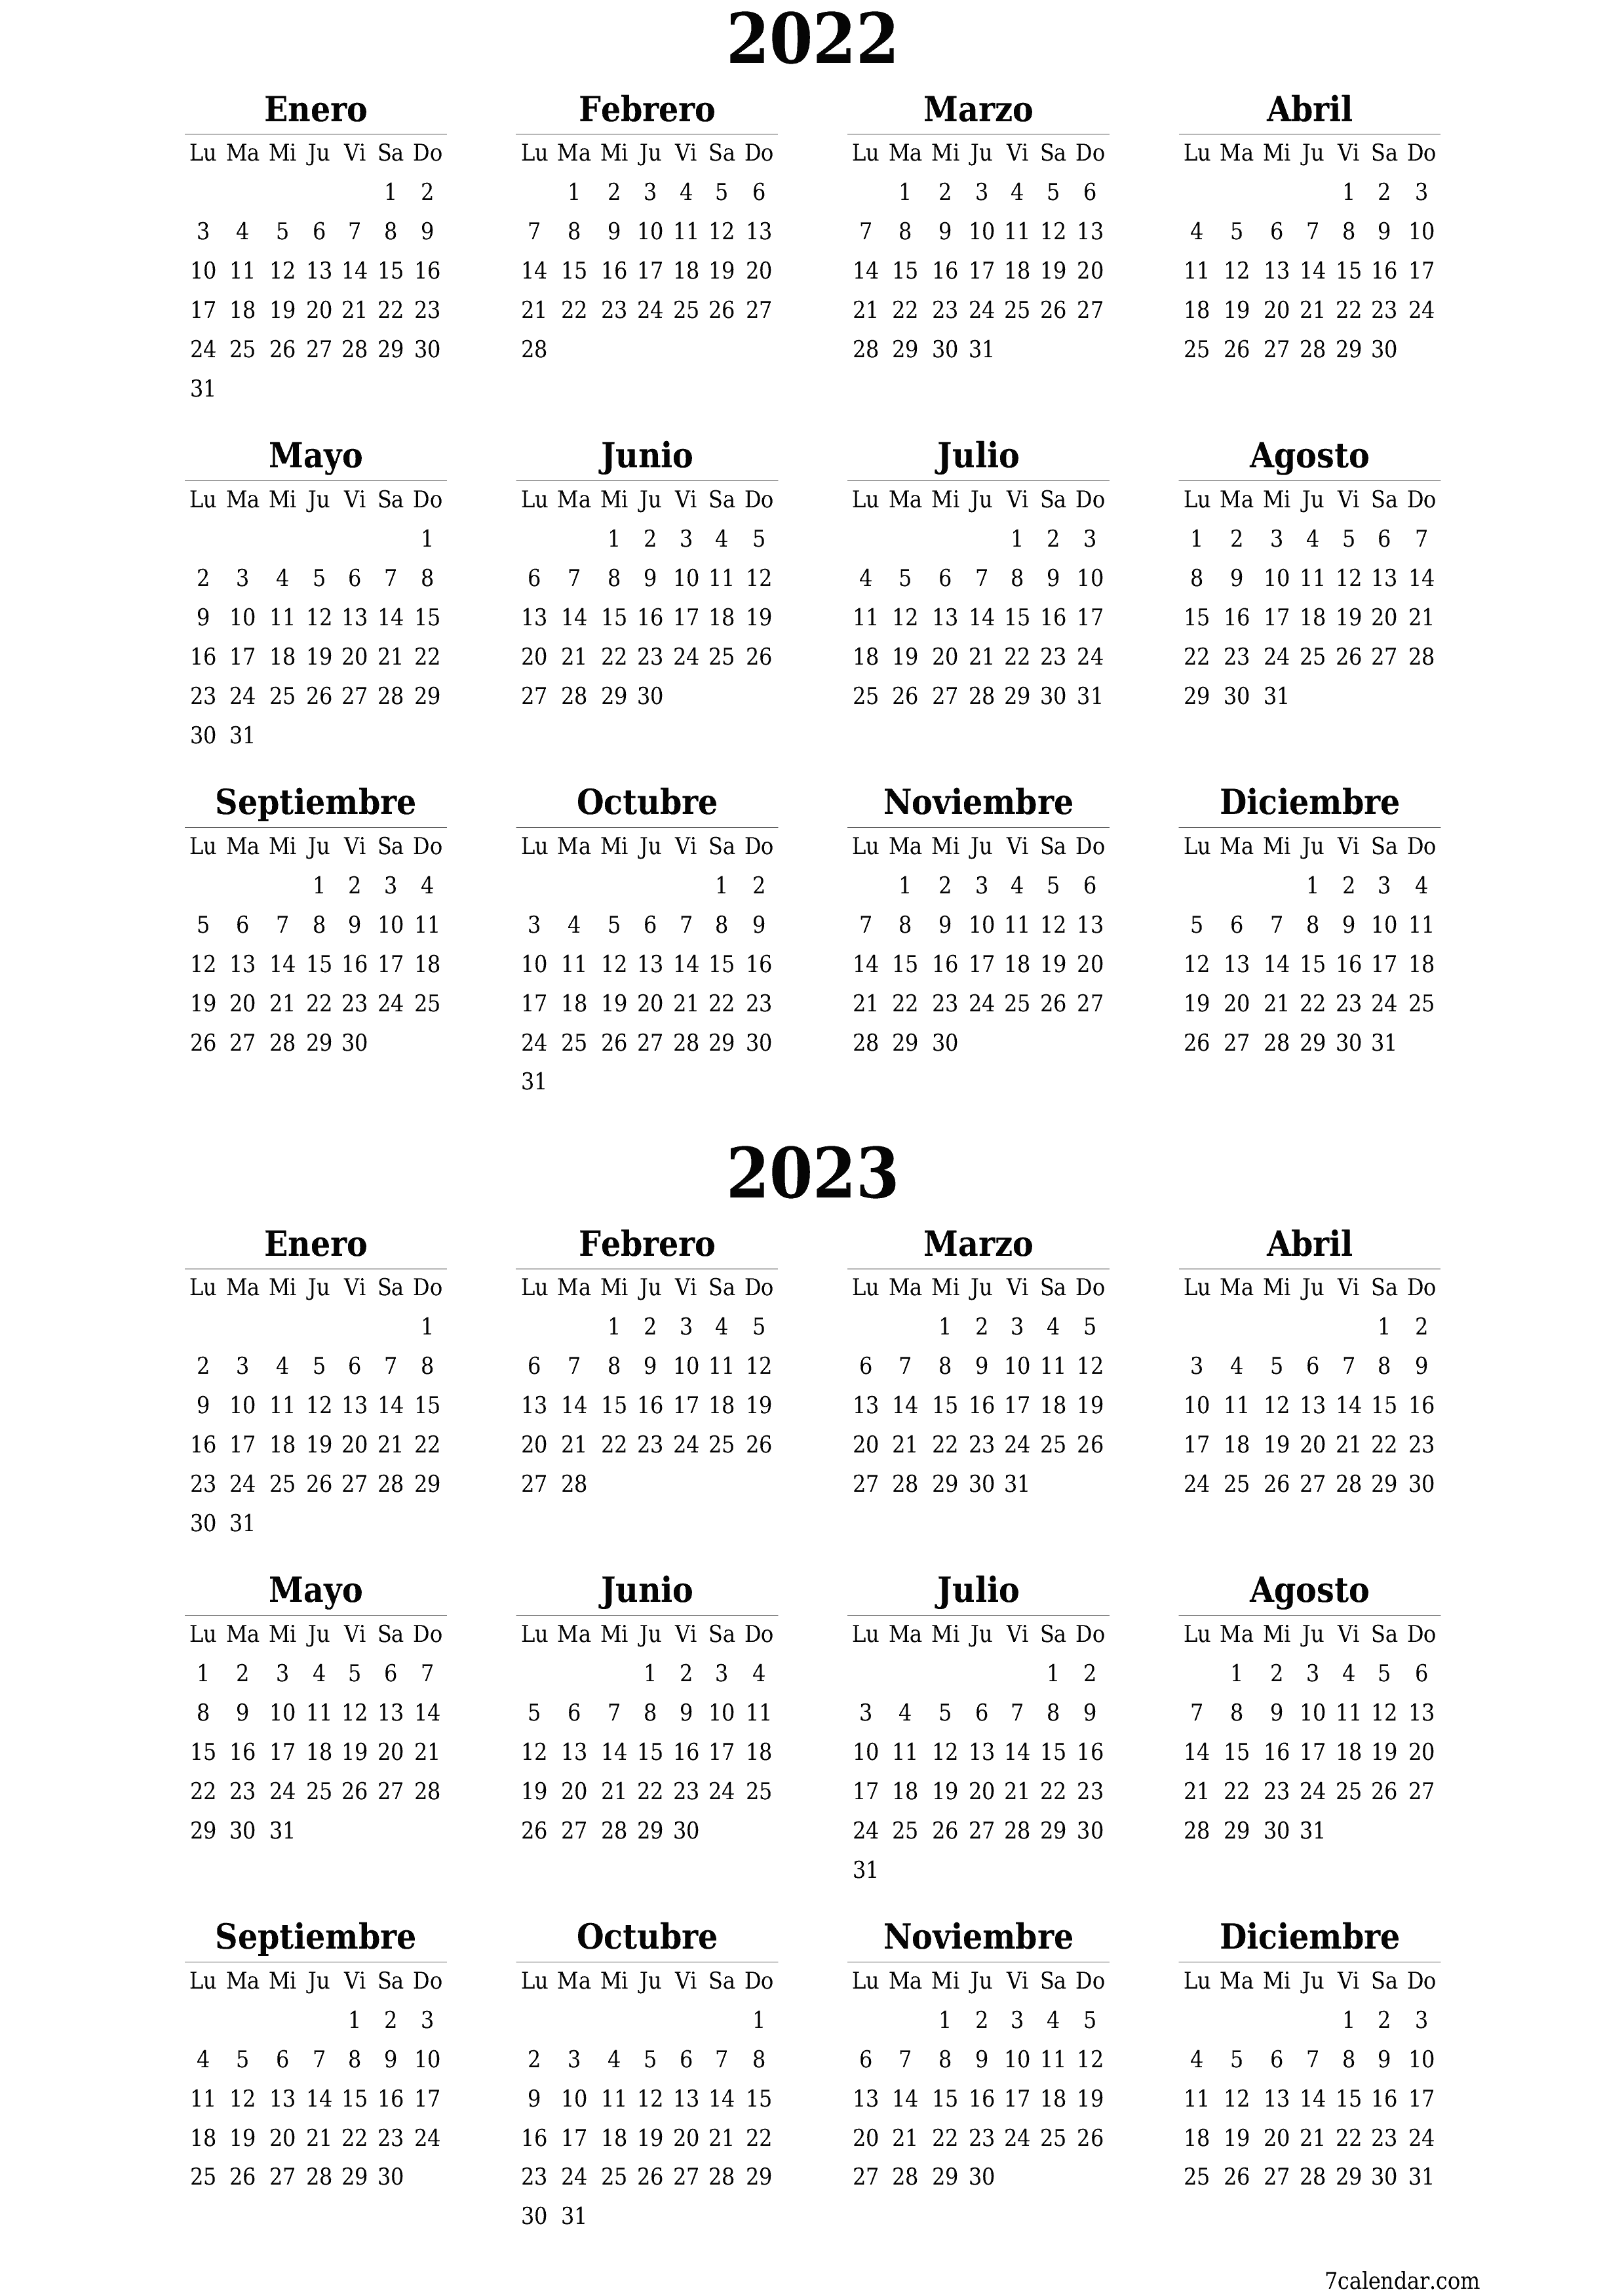  imprimible de pared plantilla de gratisvertical Anual calendario Agosto (Ago) 2022